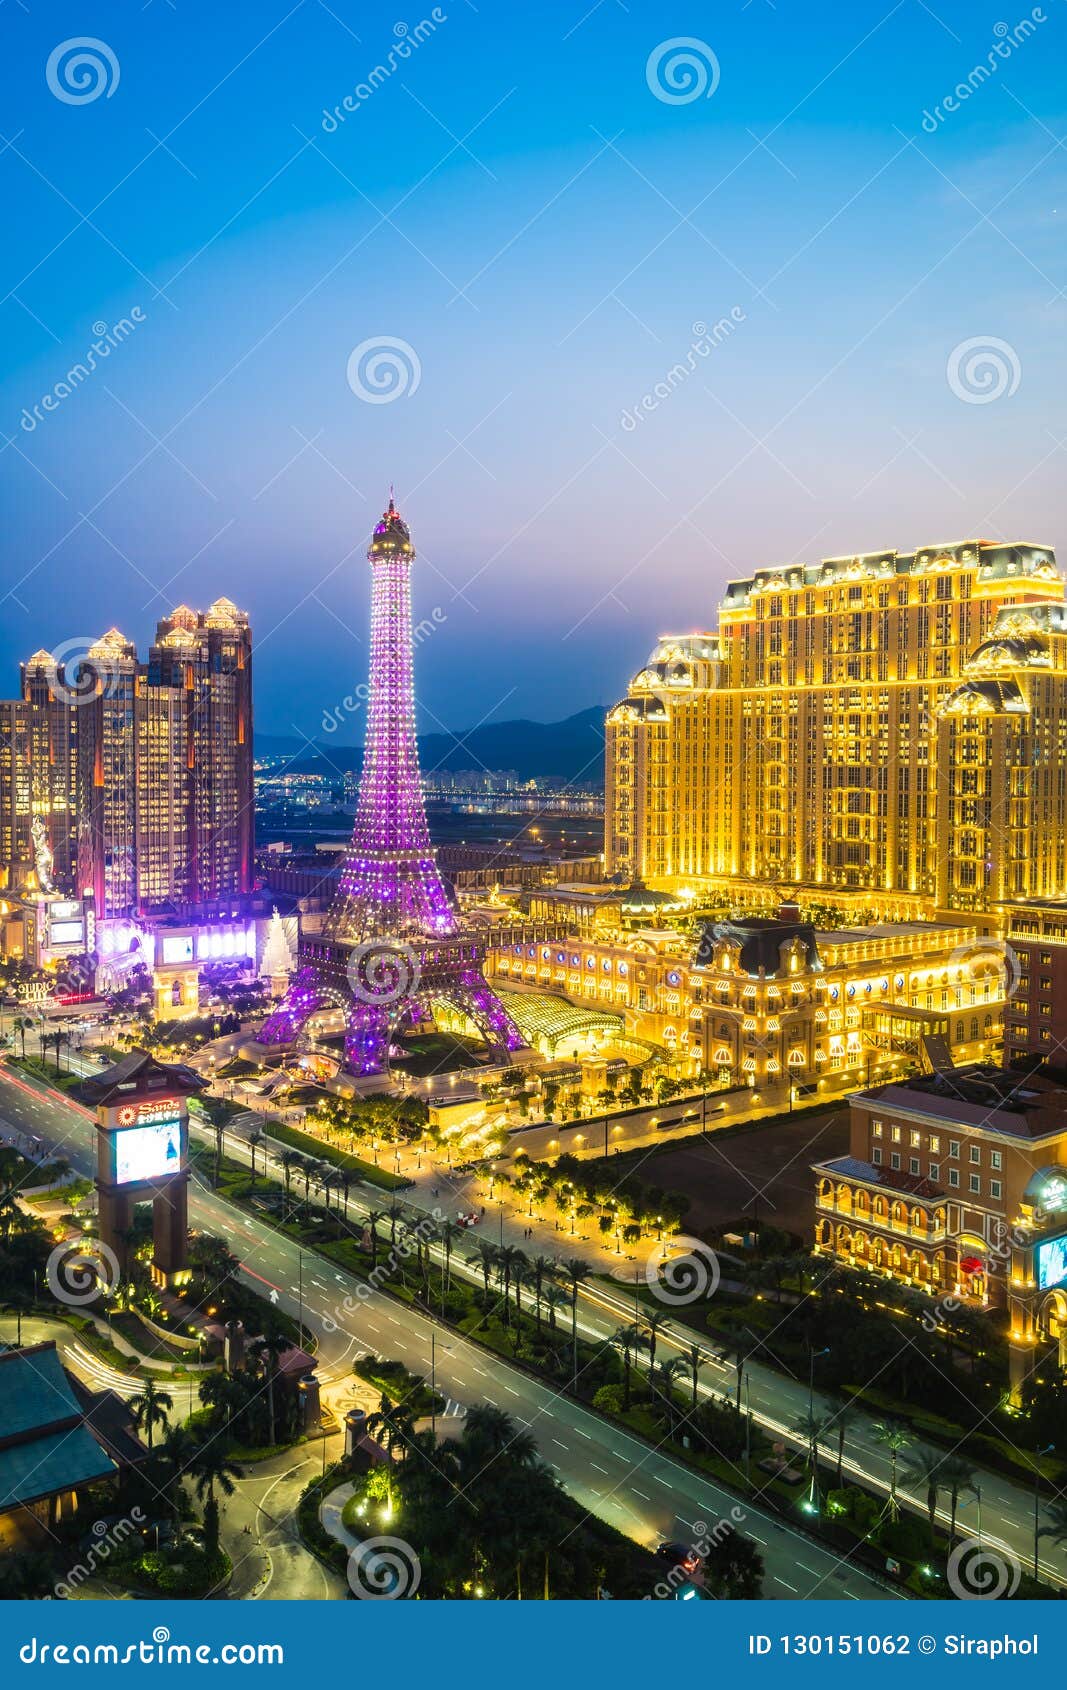 Landmark Macau